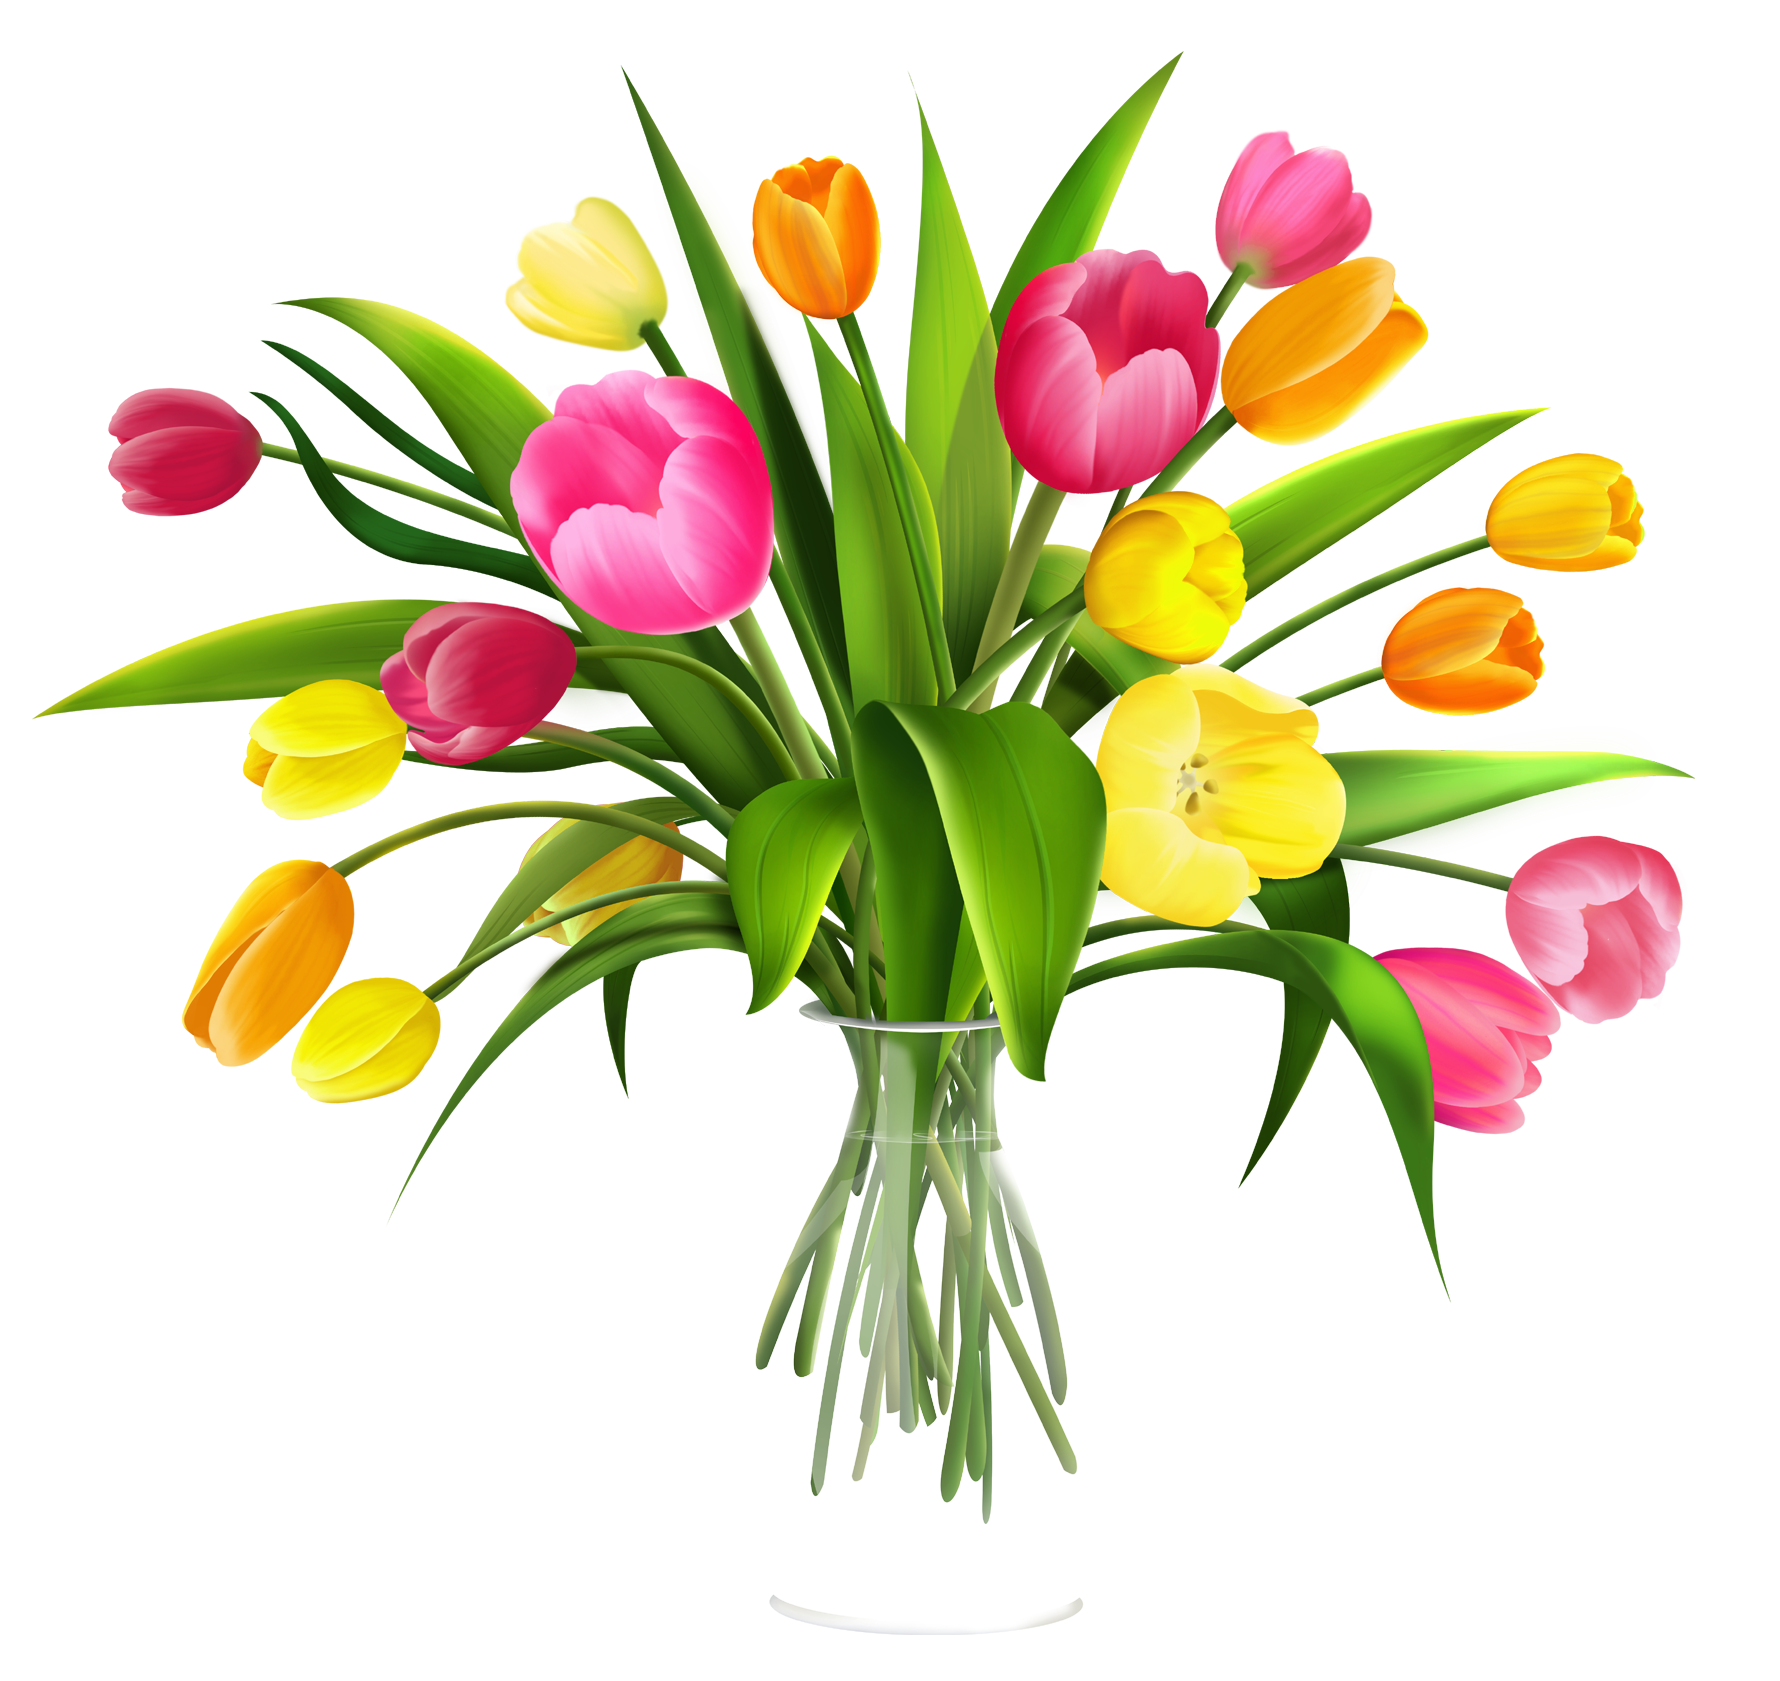 Flower, Vase, Spring, Arrange